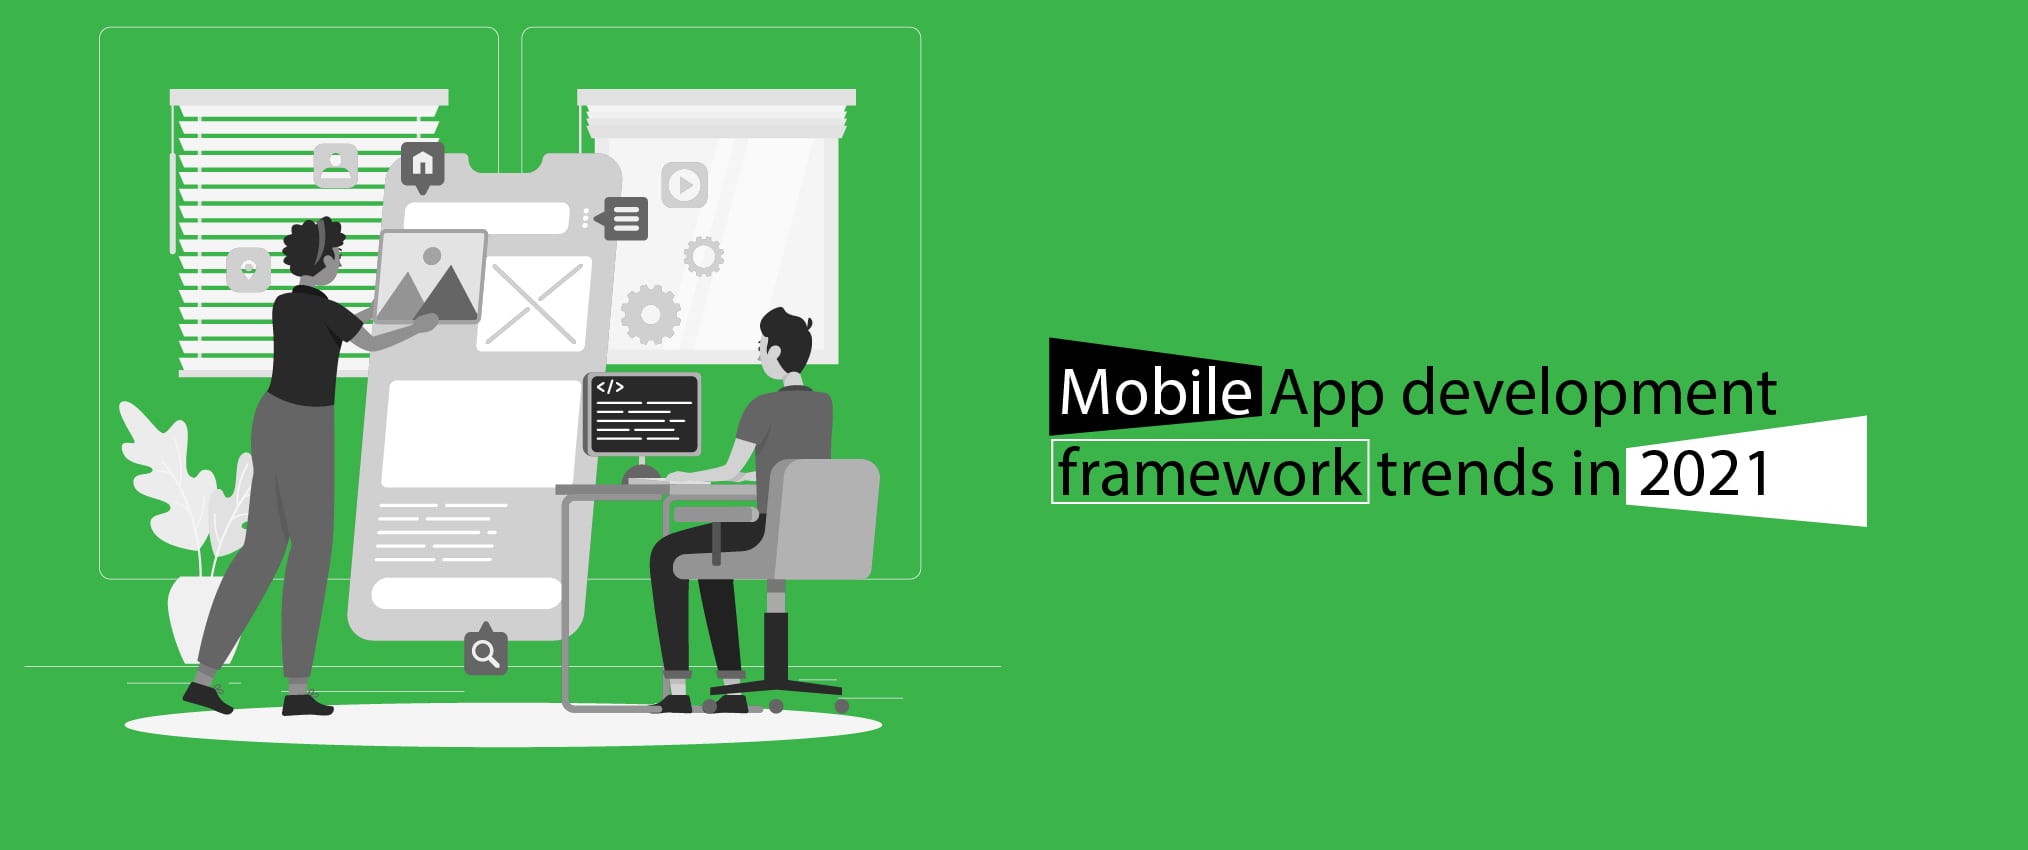 Mobile App development framework trends in 2021